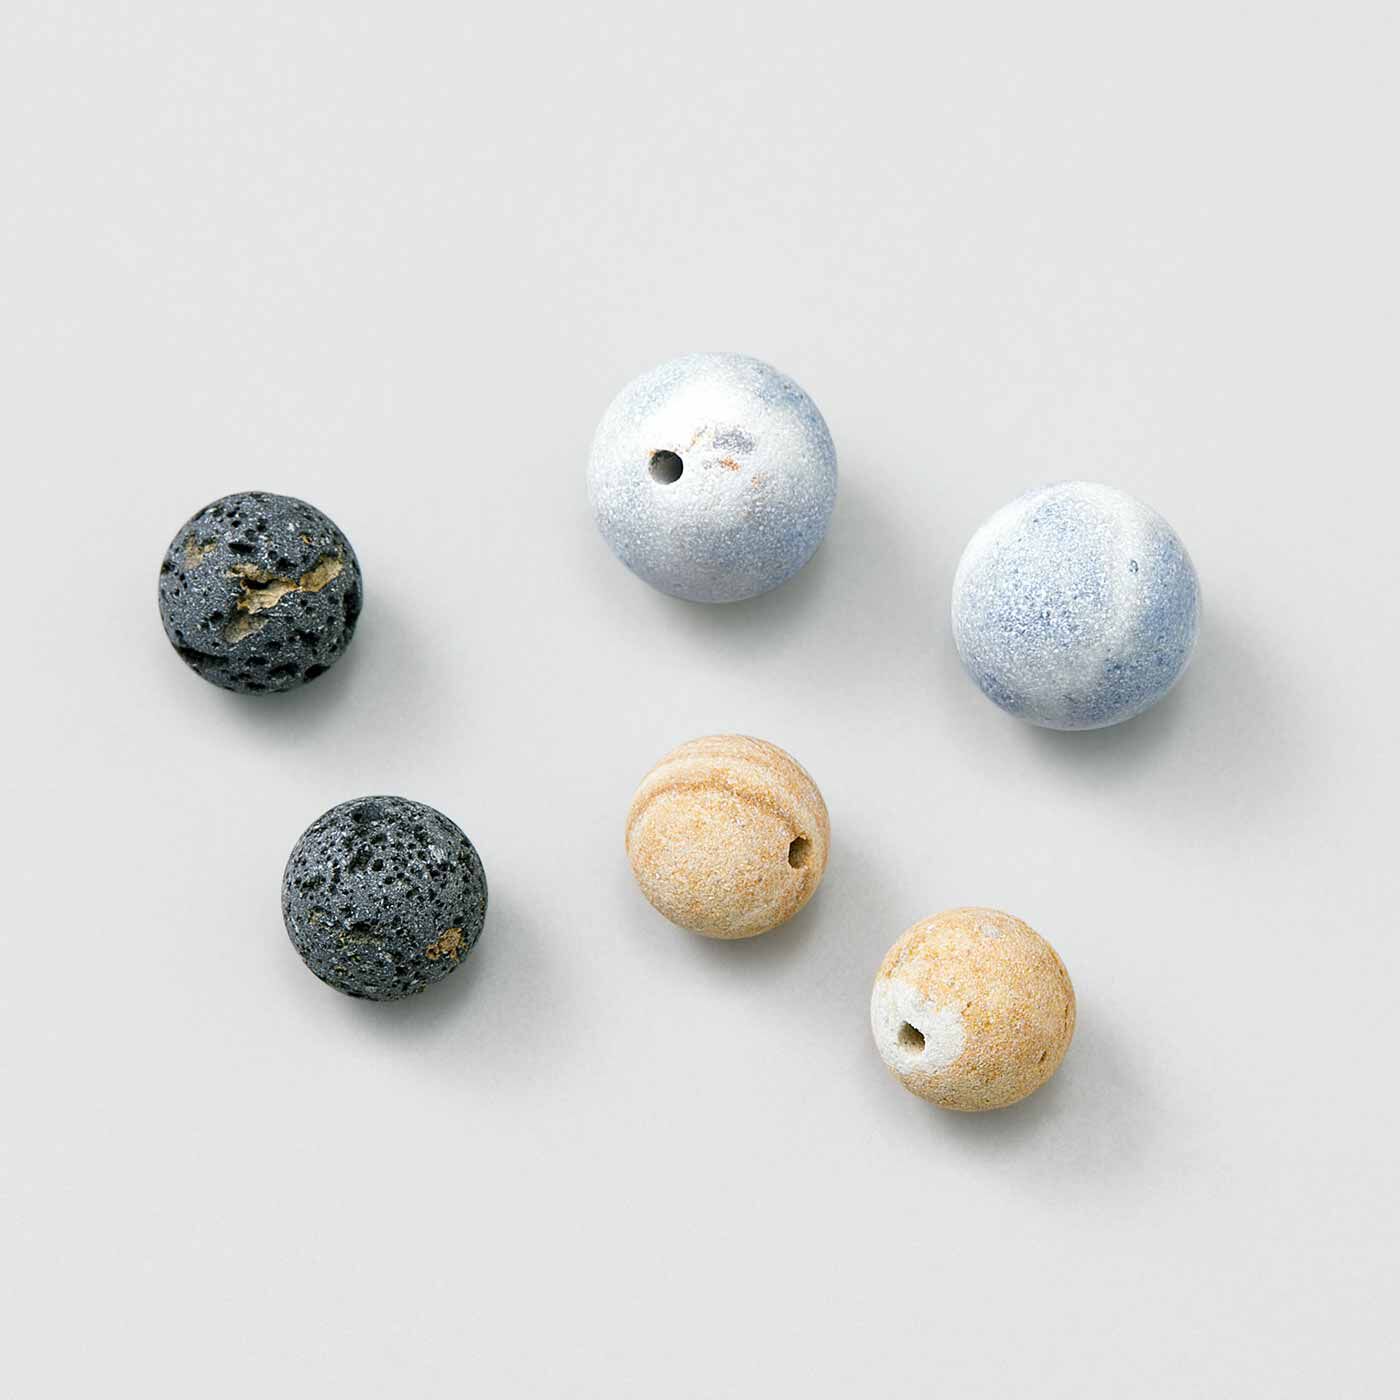 SeeMONO|繊細な色合いと質感を楽しむ 日本銘石を使った大人のイヤアクセサリーの会|粒ごとに模様の出方などが異なります。